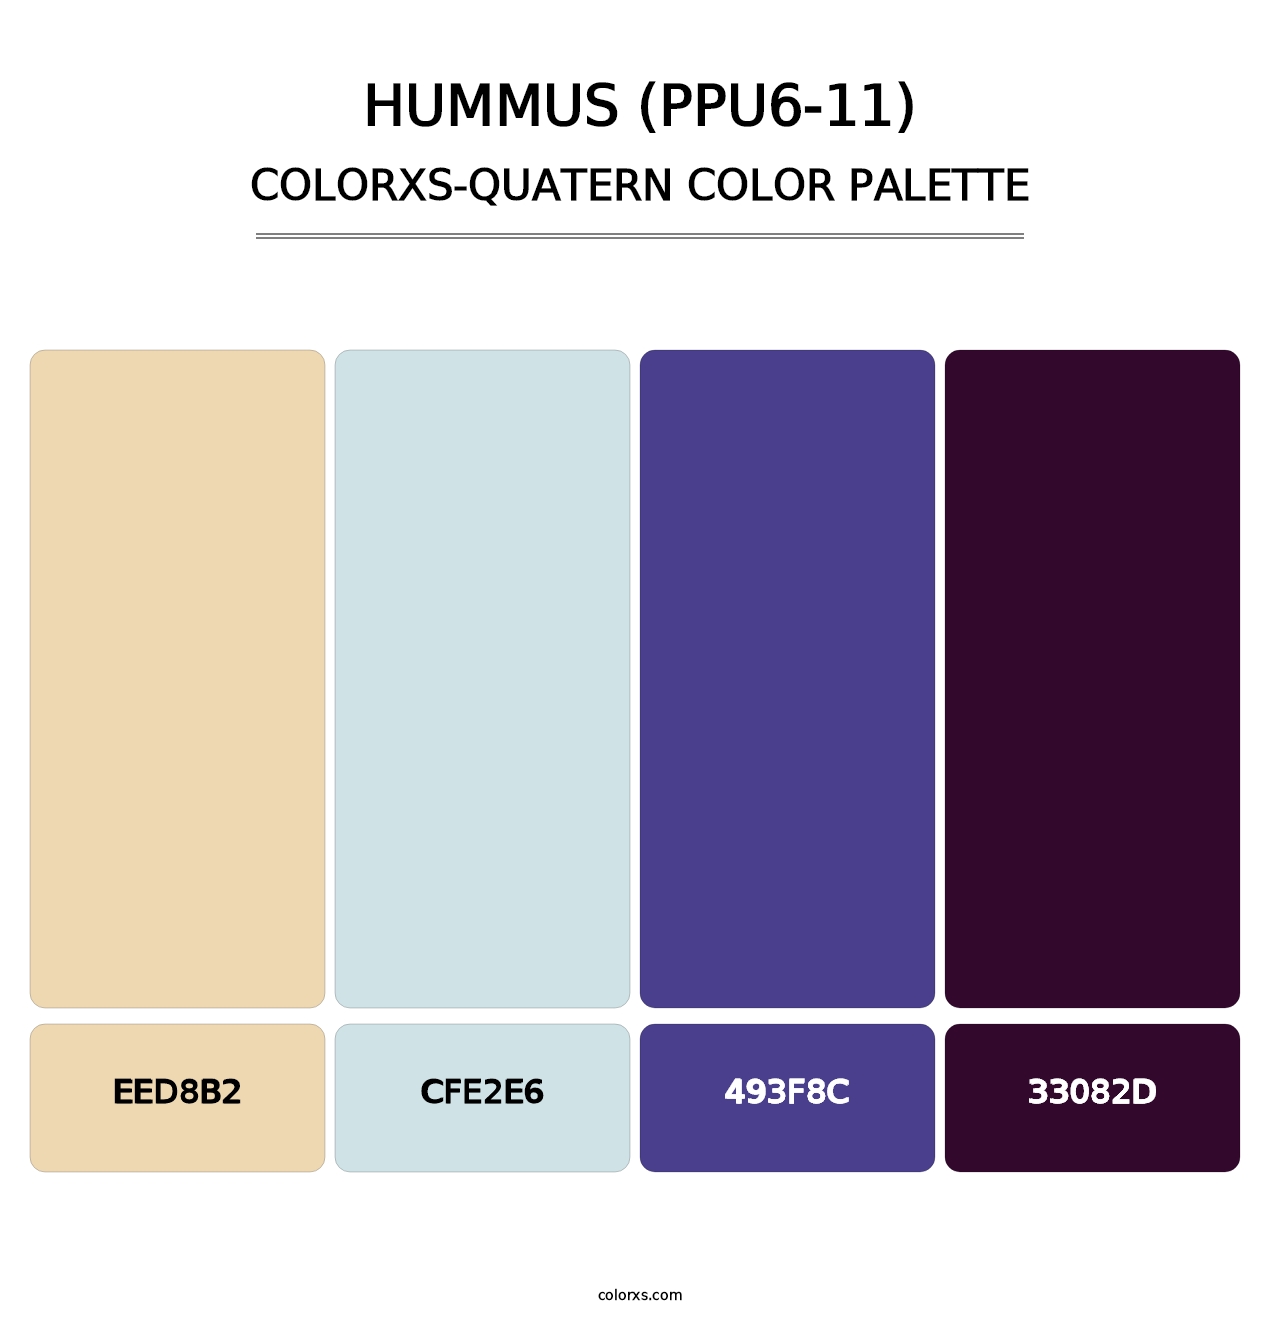 Hummus (PPU6-11) - Colorxs Quatern Palette